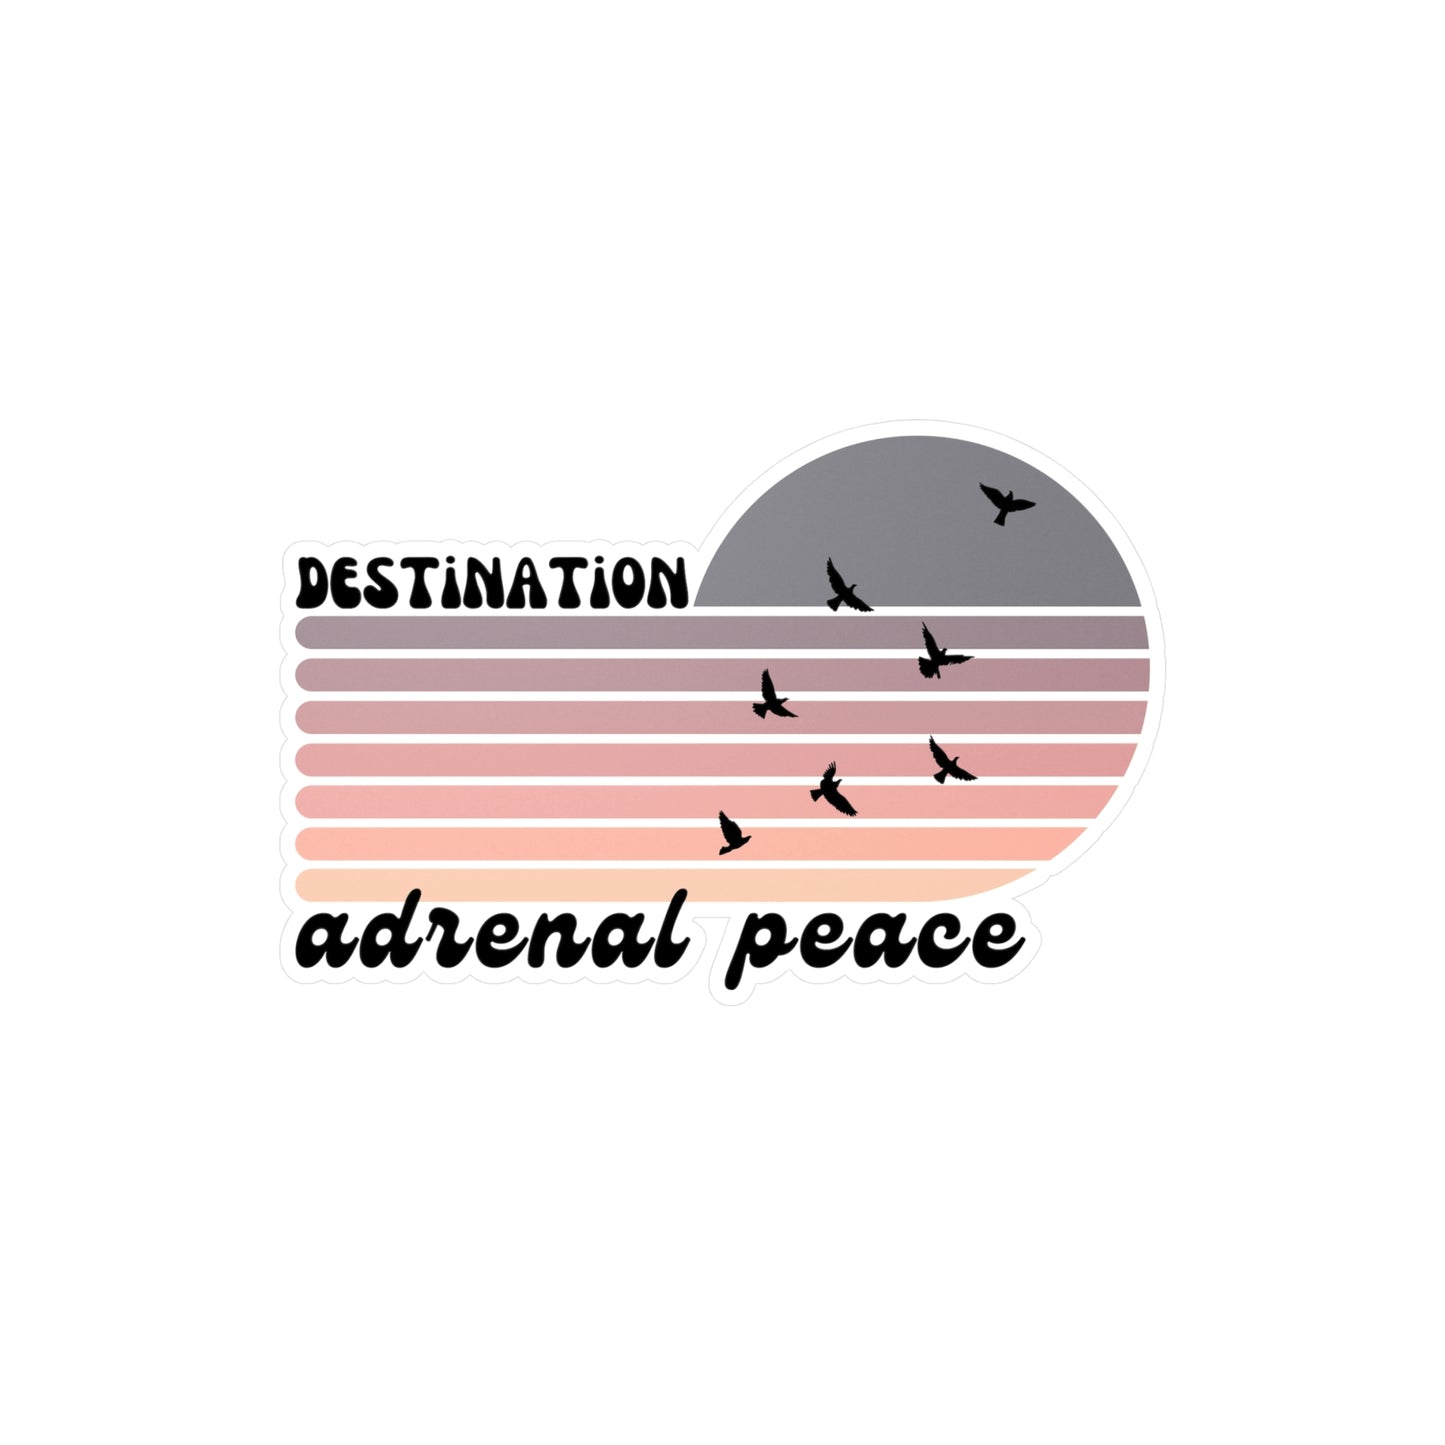 Destination: Adrenal Peace (purple gradient) Kiss-Cut Vinyl Decals